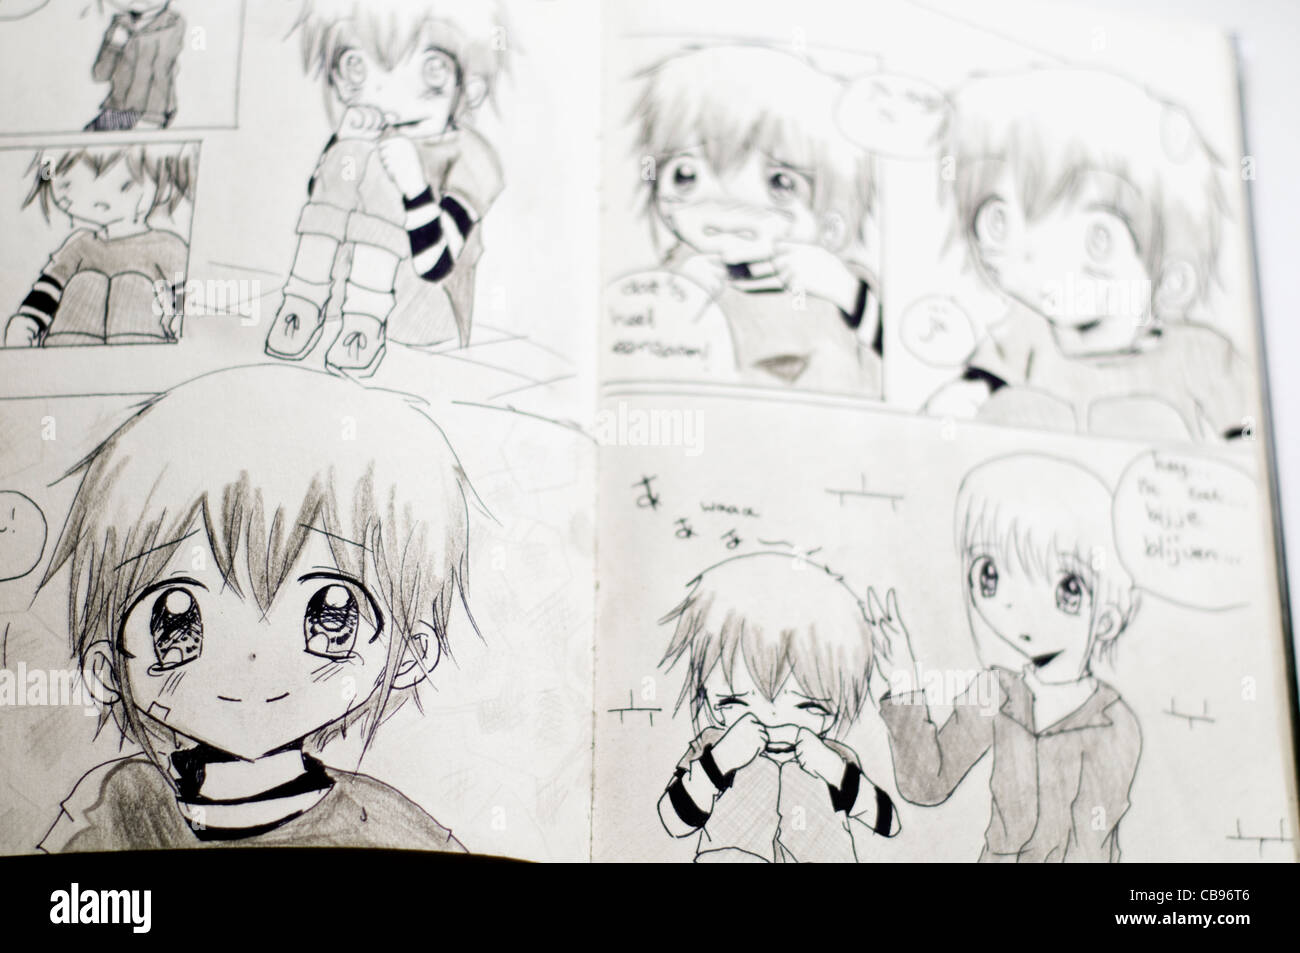 Dettaglio Del Bianco E Nero Giapponese In Stile Manga Di